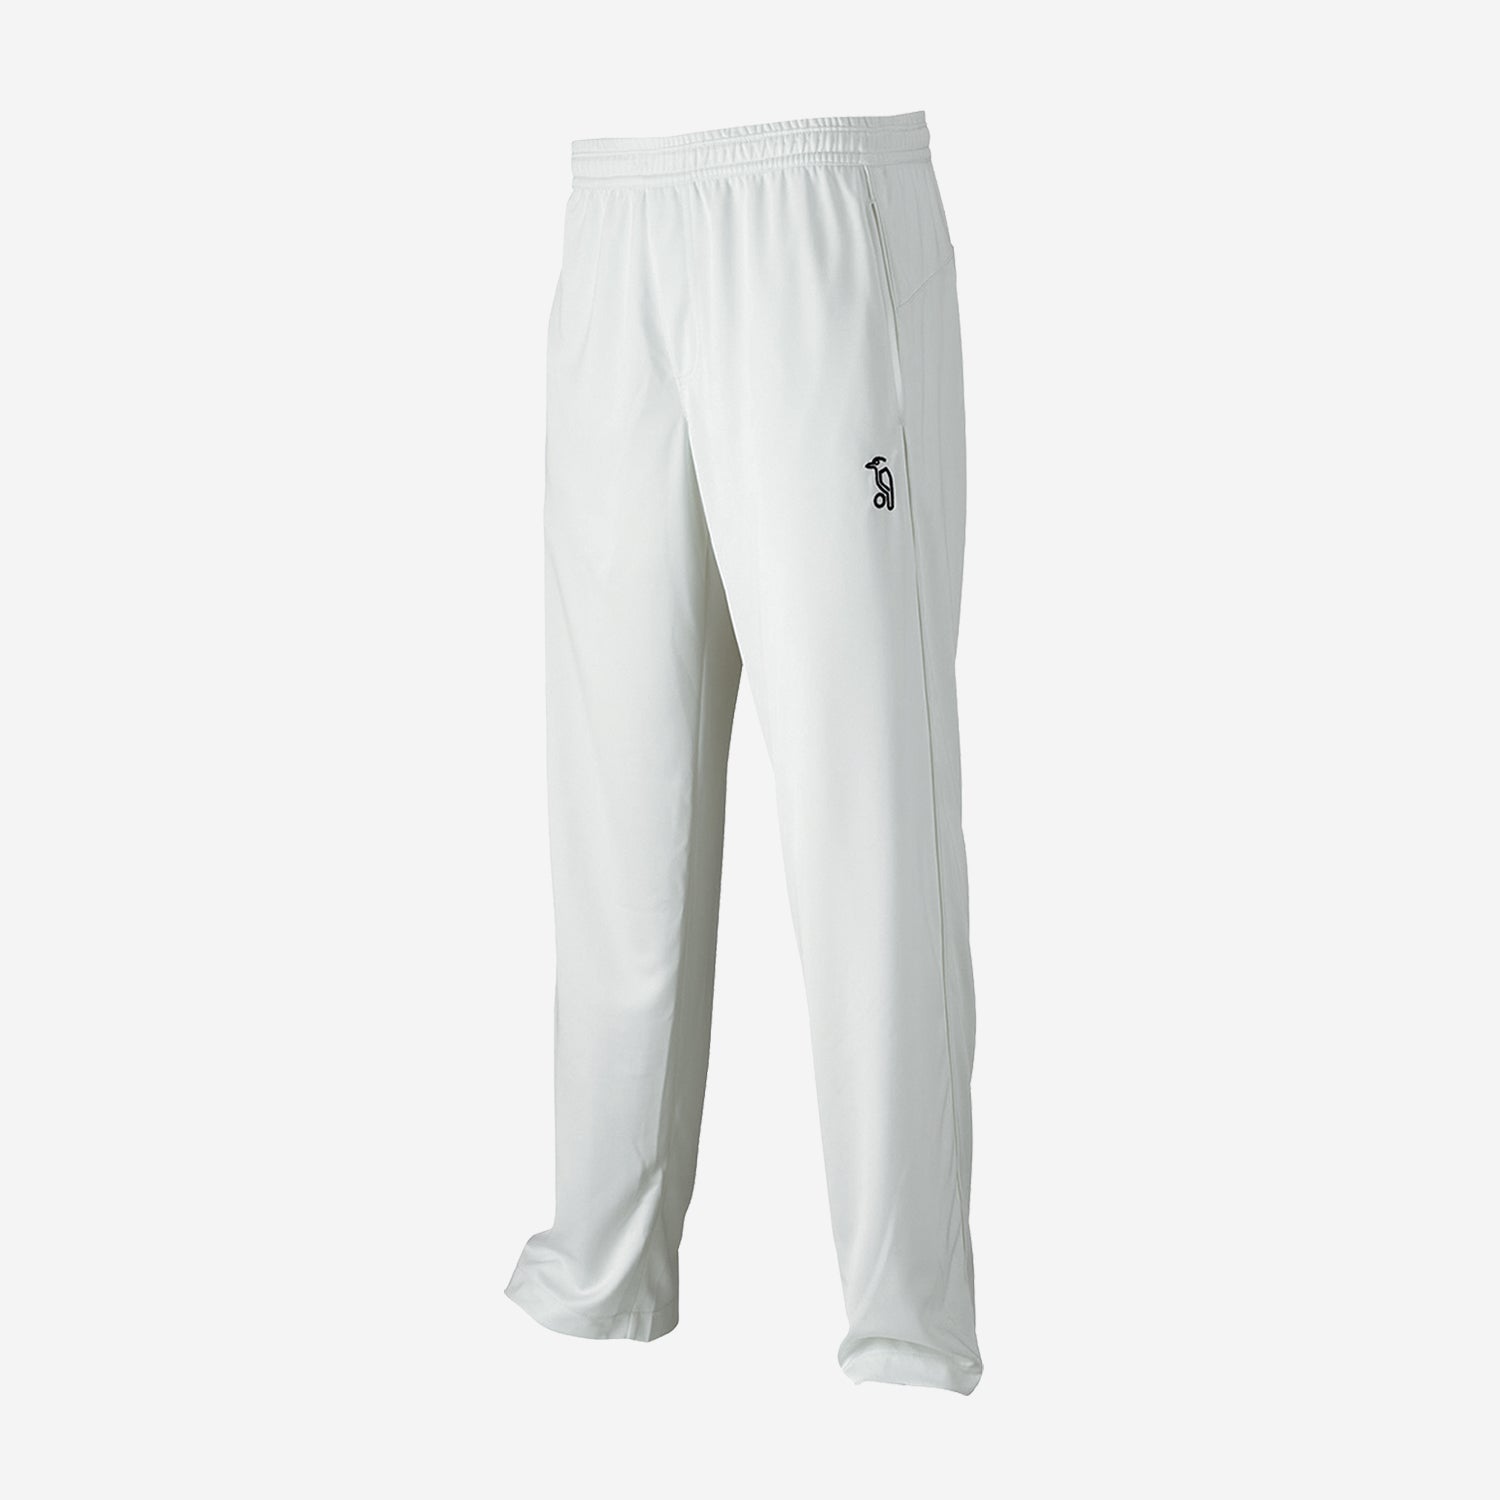 Cricket Pant | Trouser | White Color | Custom Color Uniform | On Sale